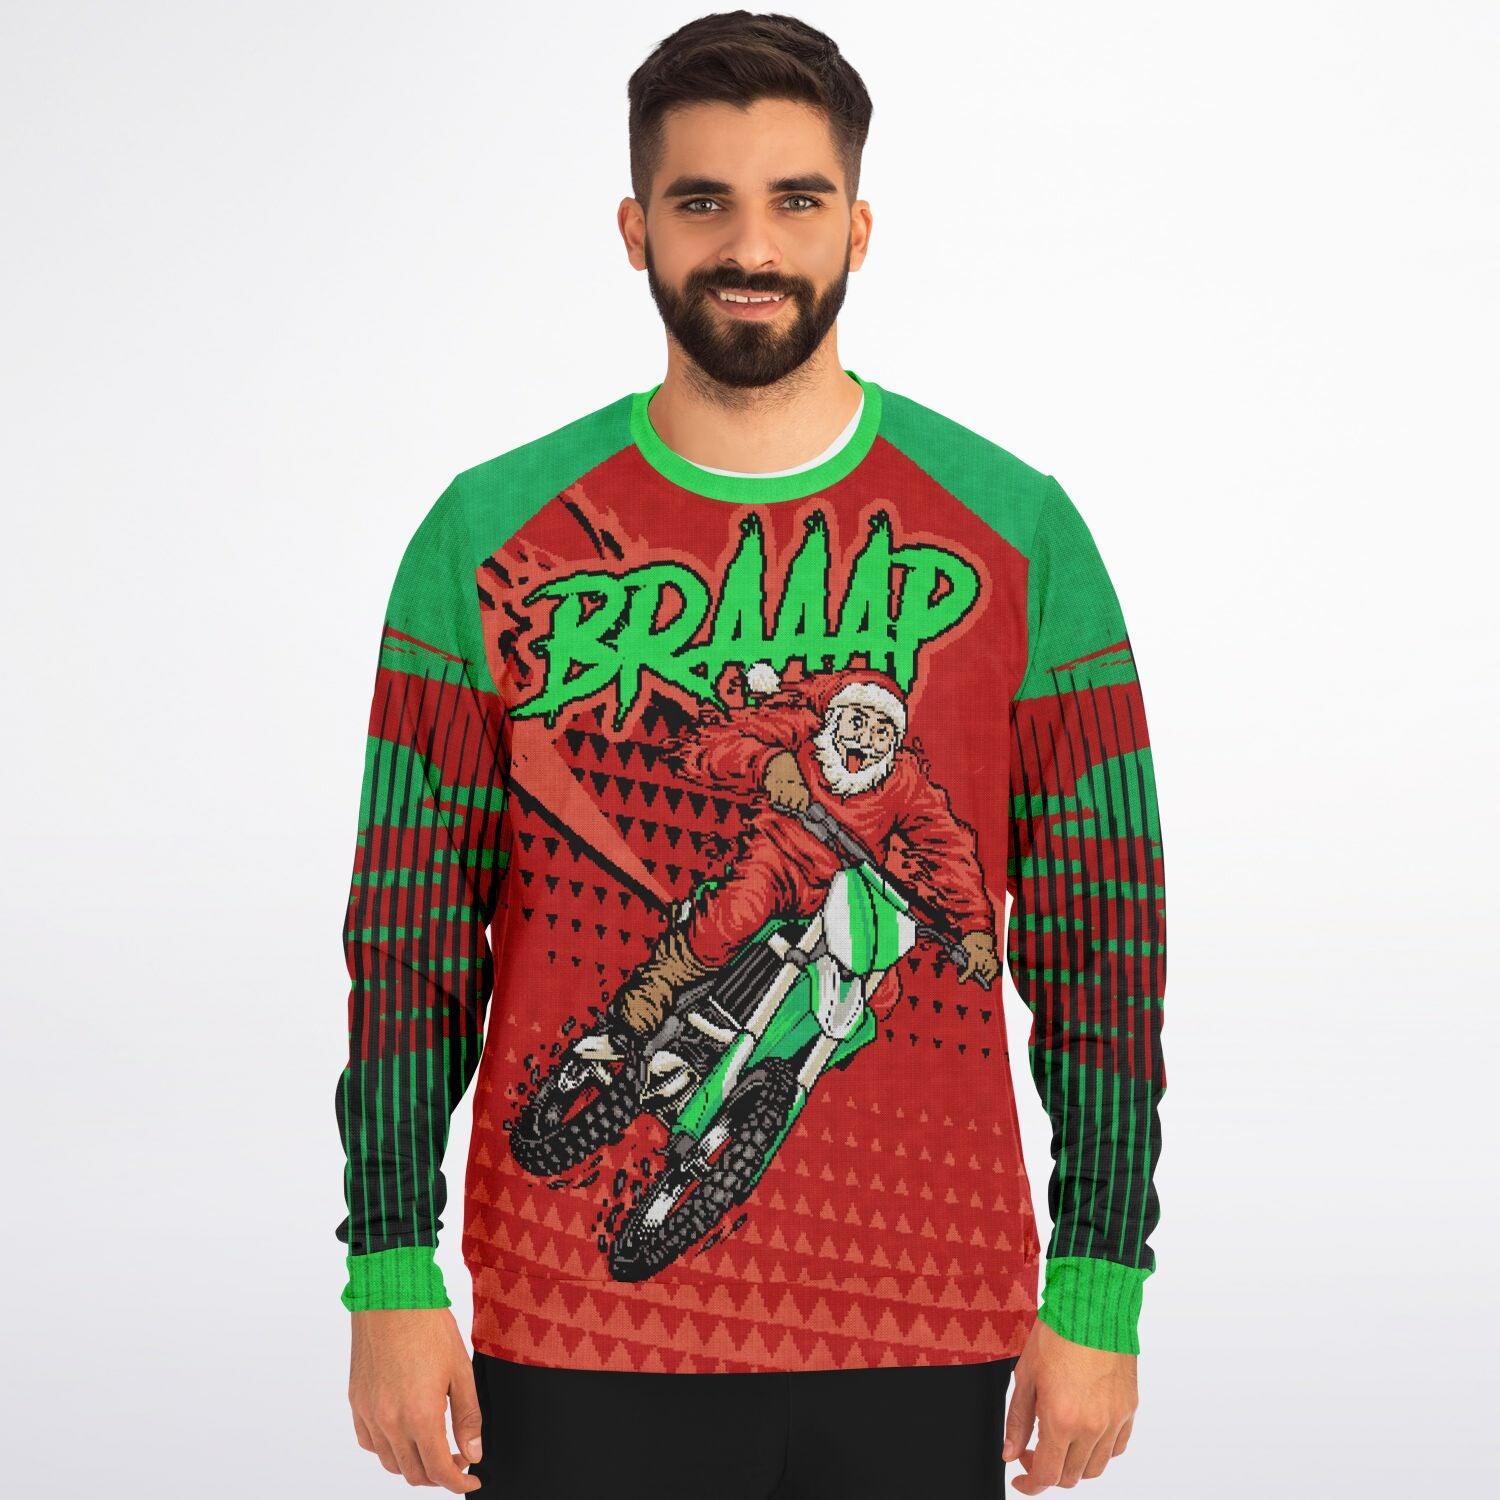 Braap Santa # 25 Motor Cross Jersey Ugly Christmas Sweater Top Koala Tee - TopKoalaTee